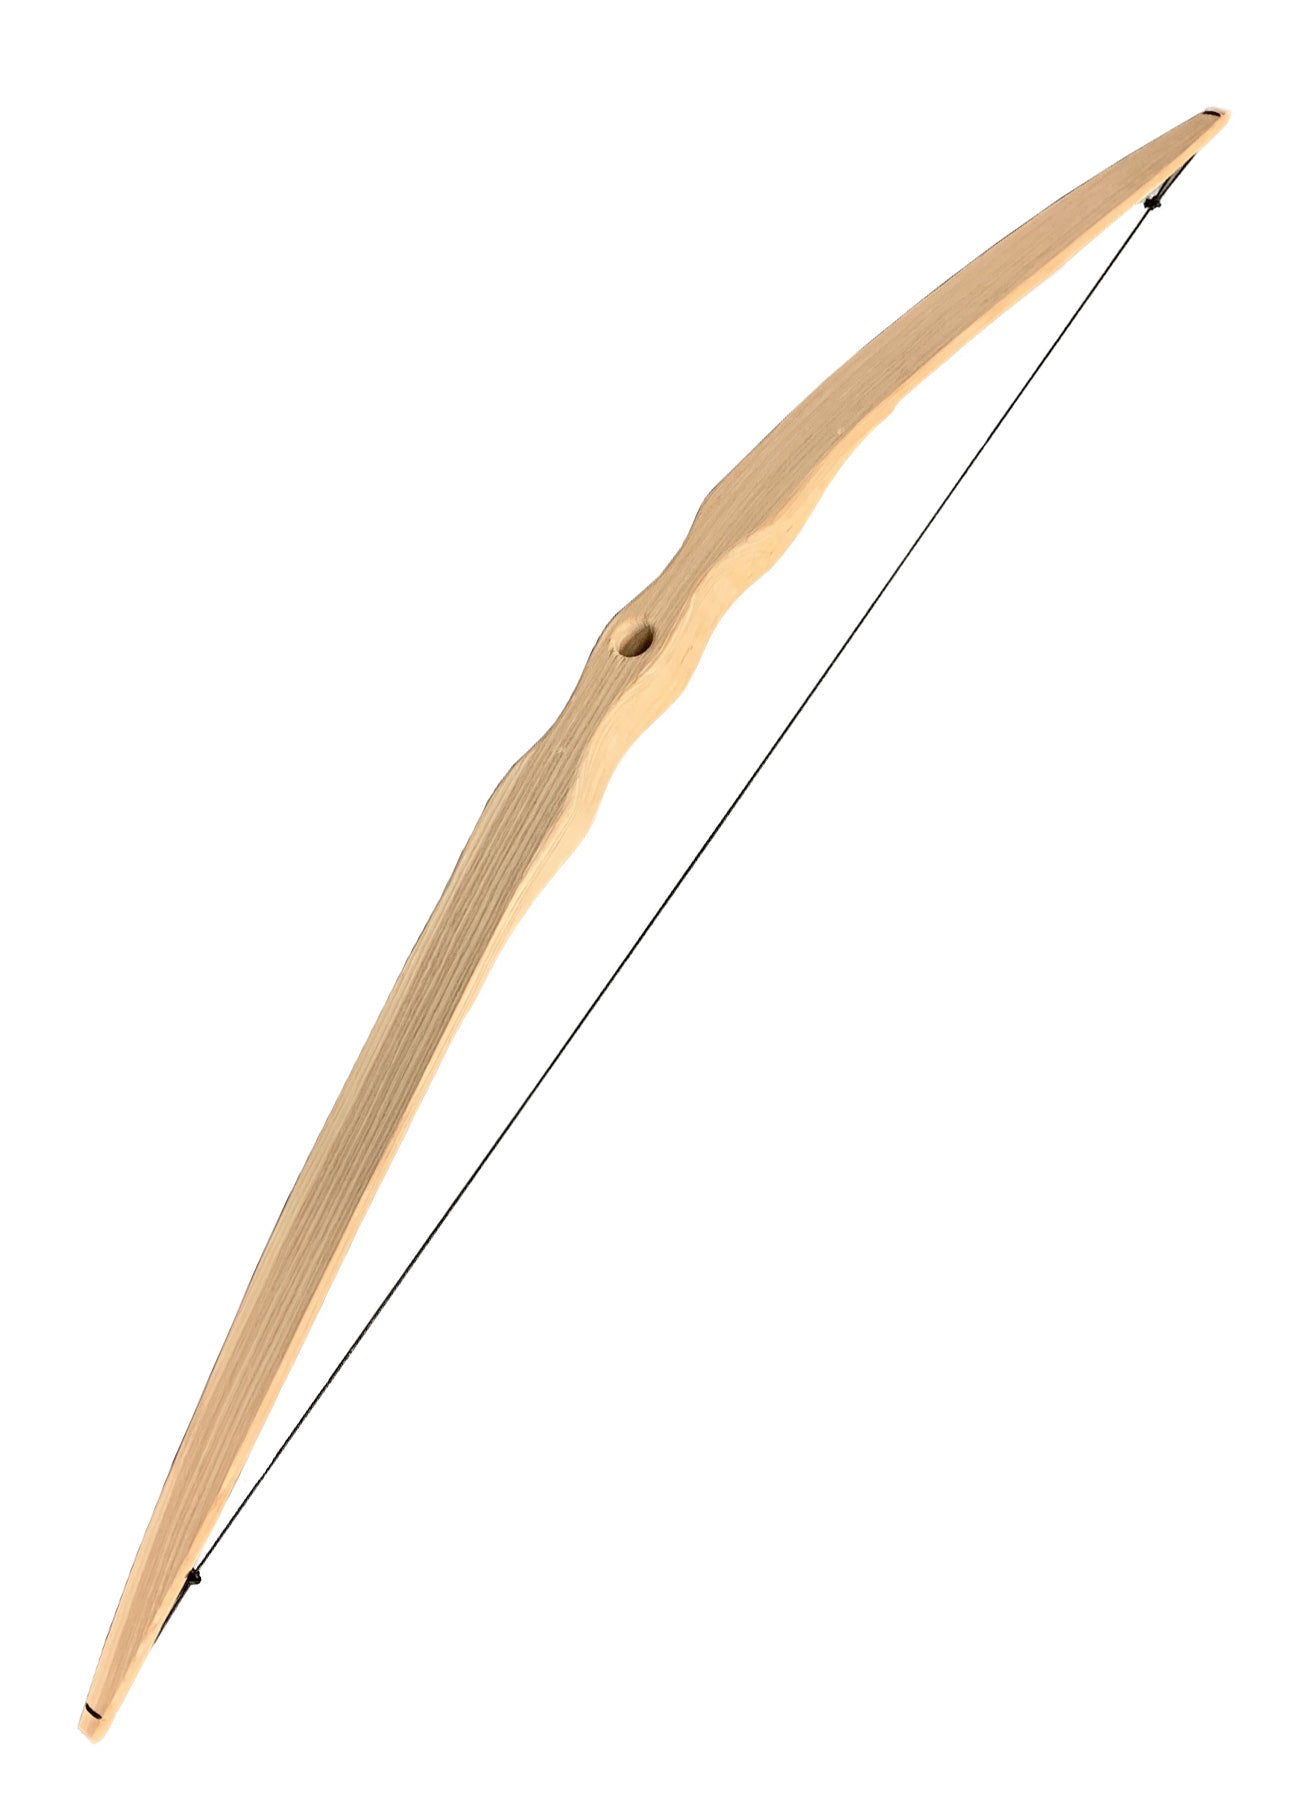 Arc et flèche en bois faits à la main pour enfants, 100 cm, boîte